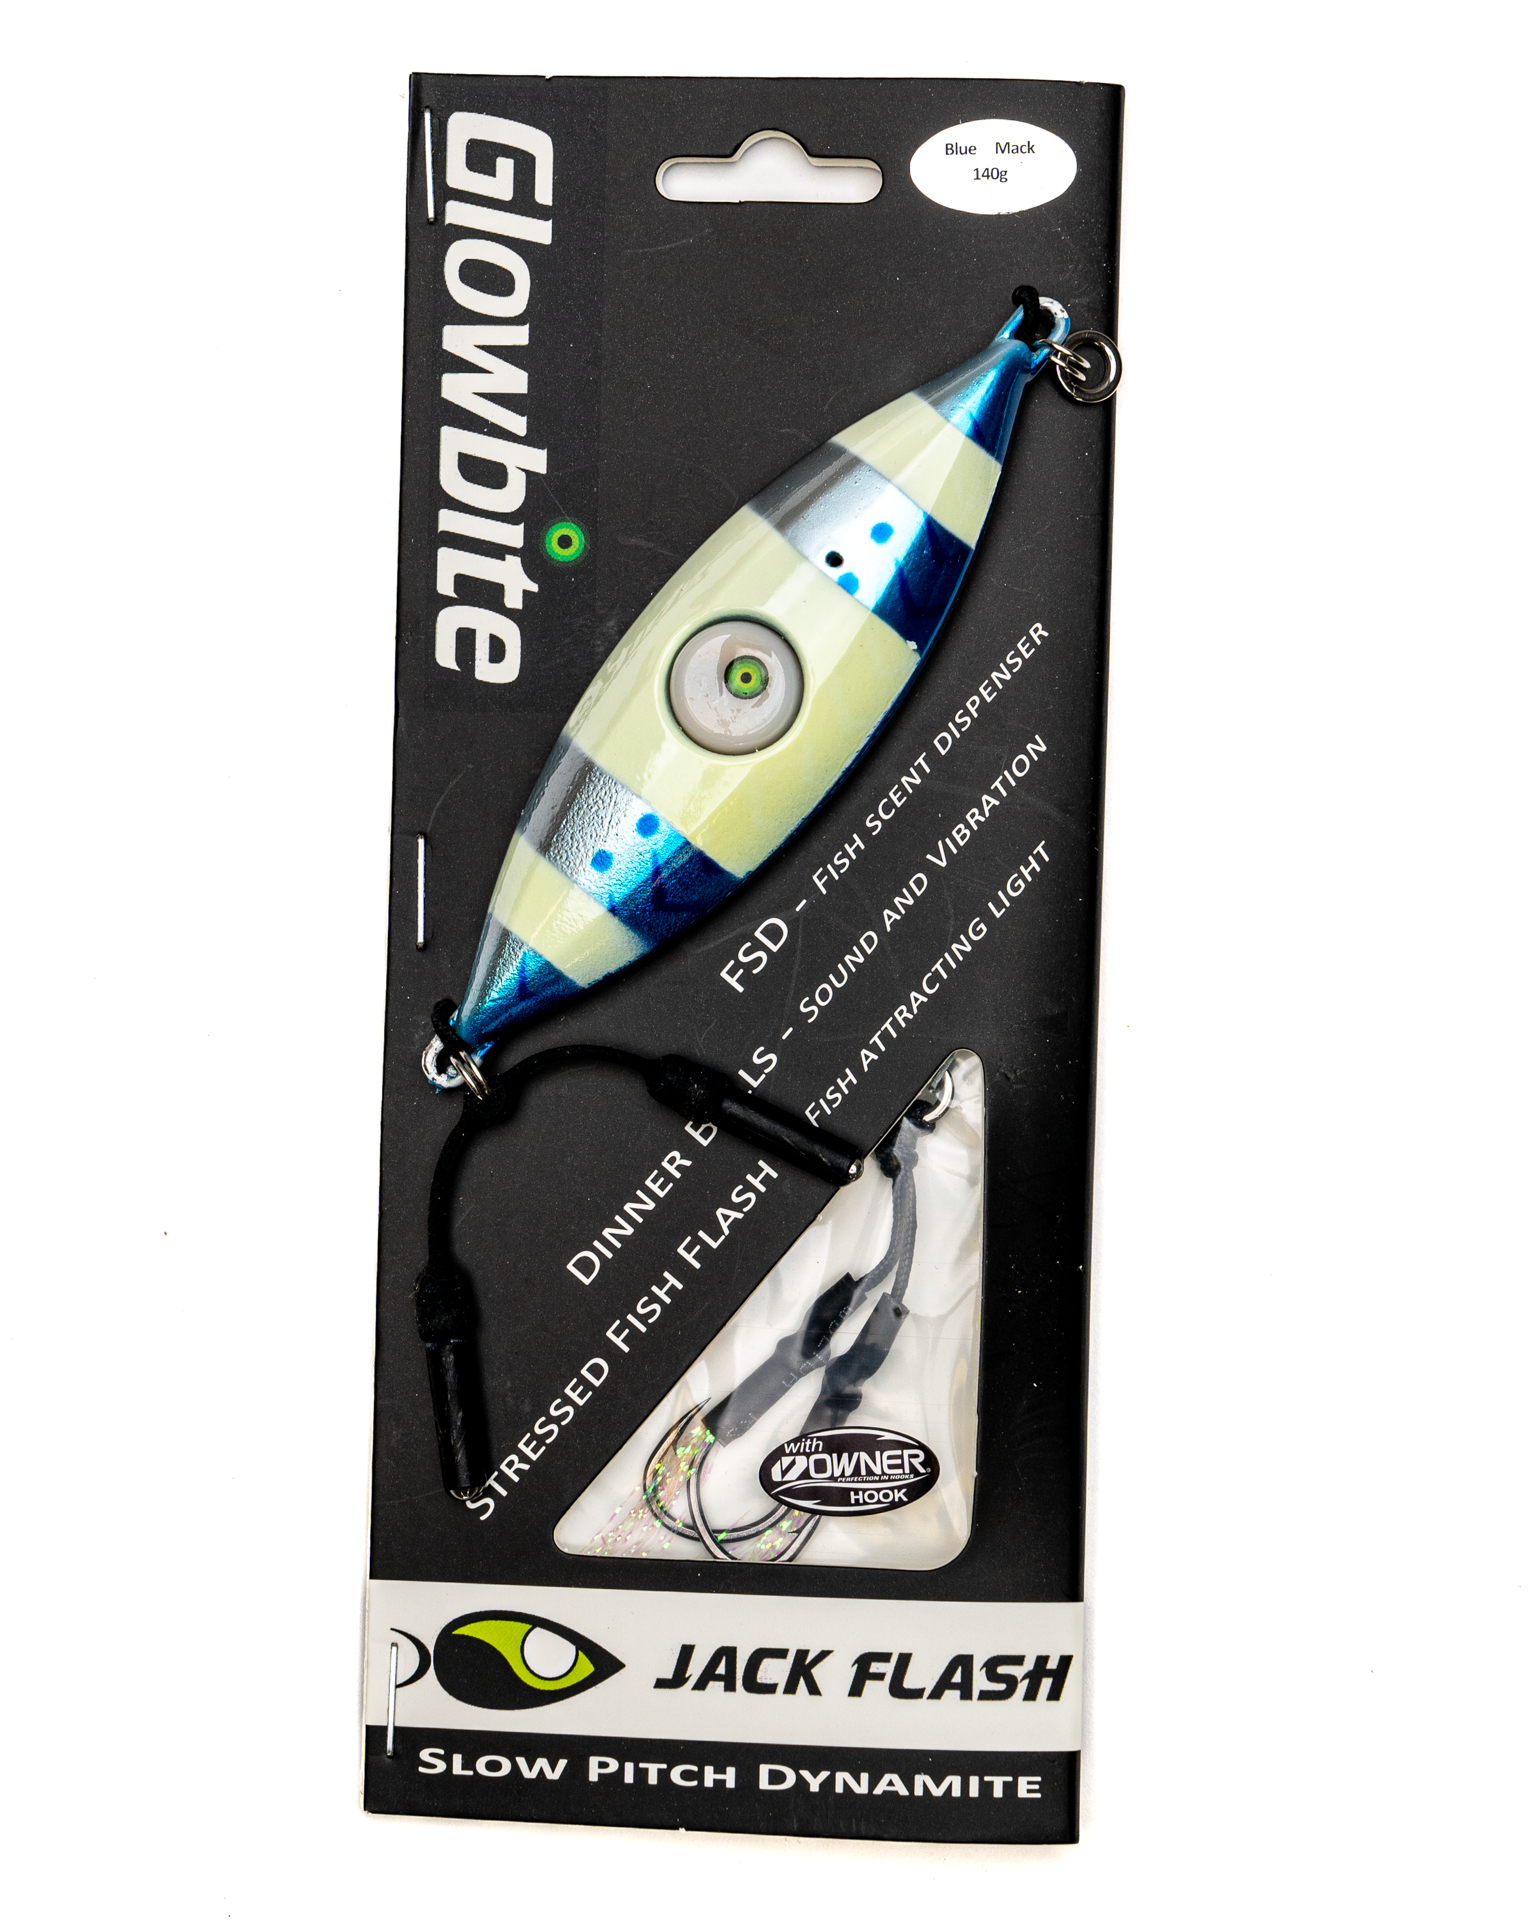 Glowbite Jack Flash – Blue Mack - 140g